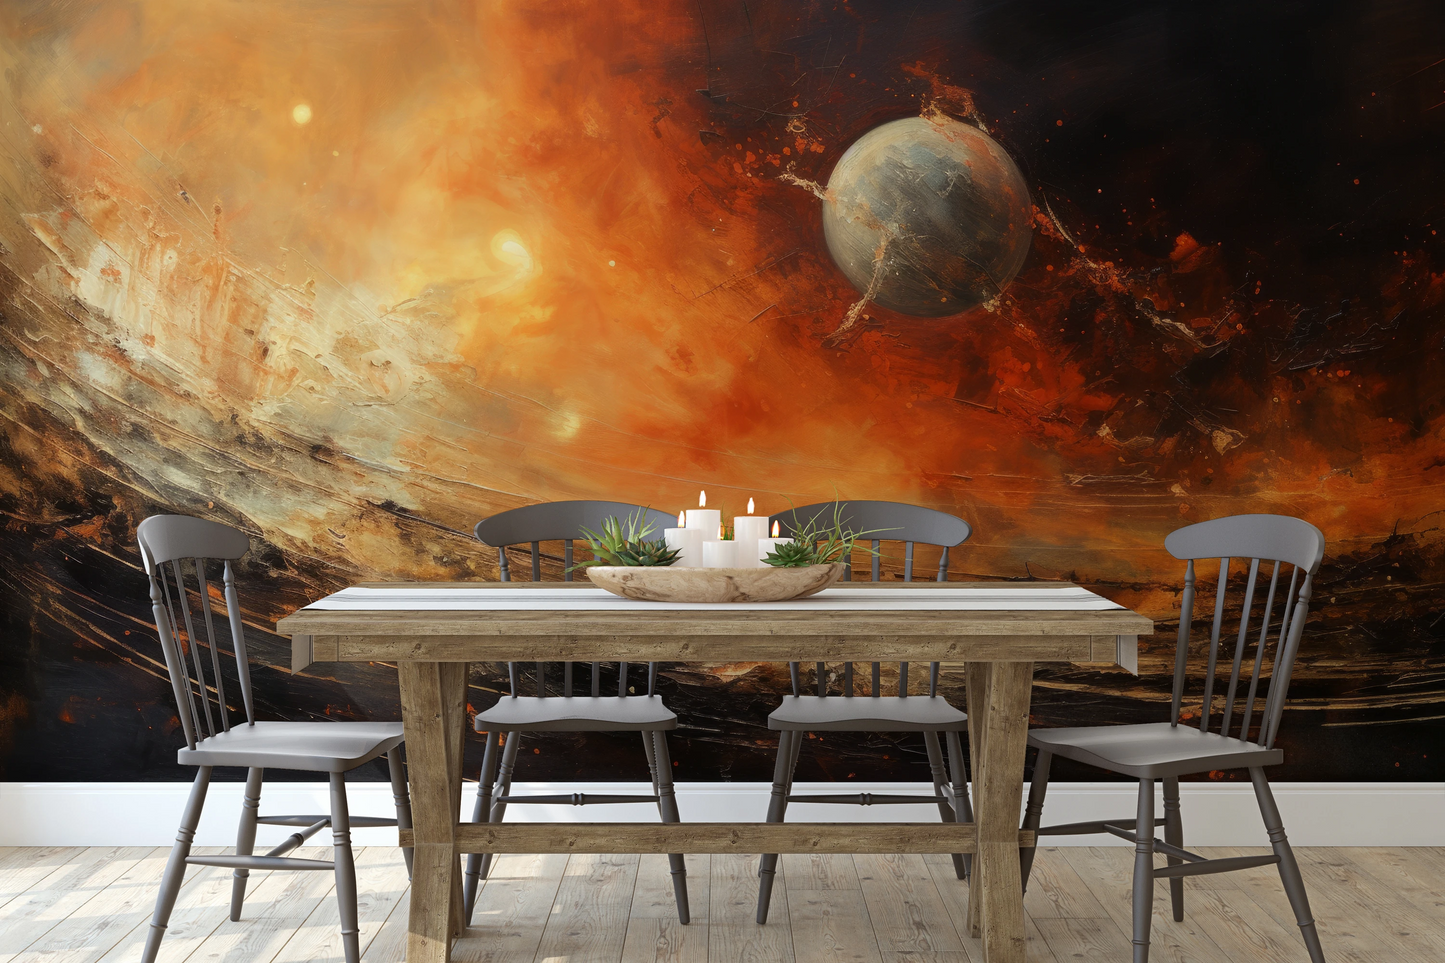 Fototapeta malowana o nazwie Celestial Journey pokazana w aranżacji wnętrza.